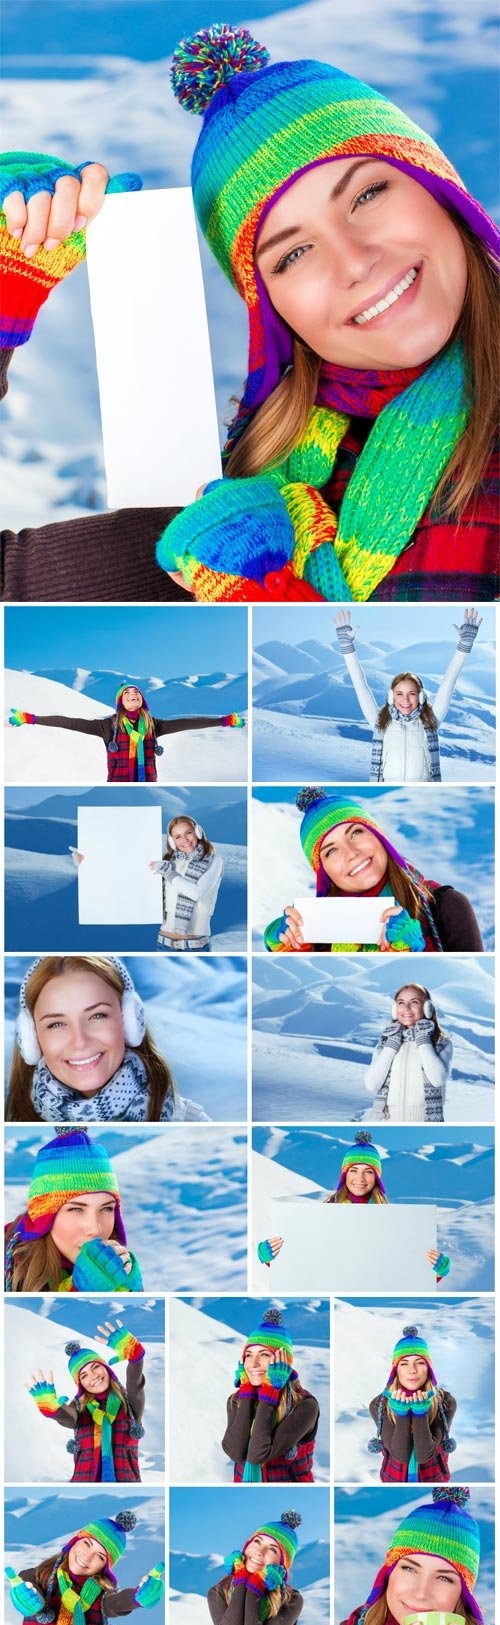 Young woman at ski resort stock photo